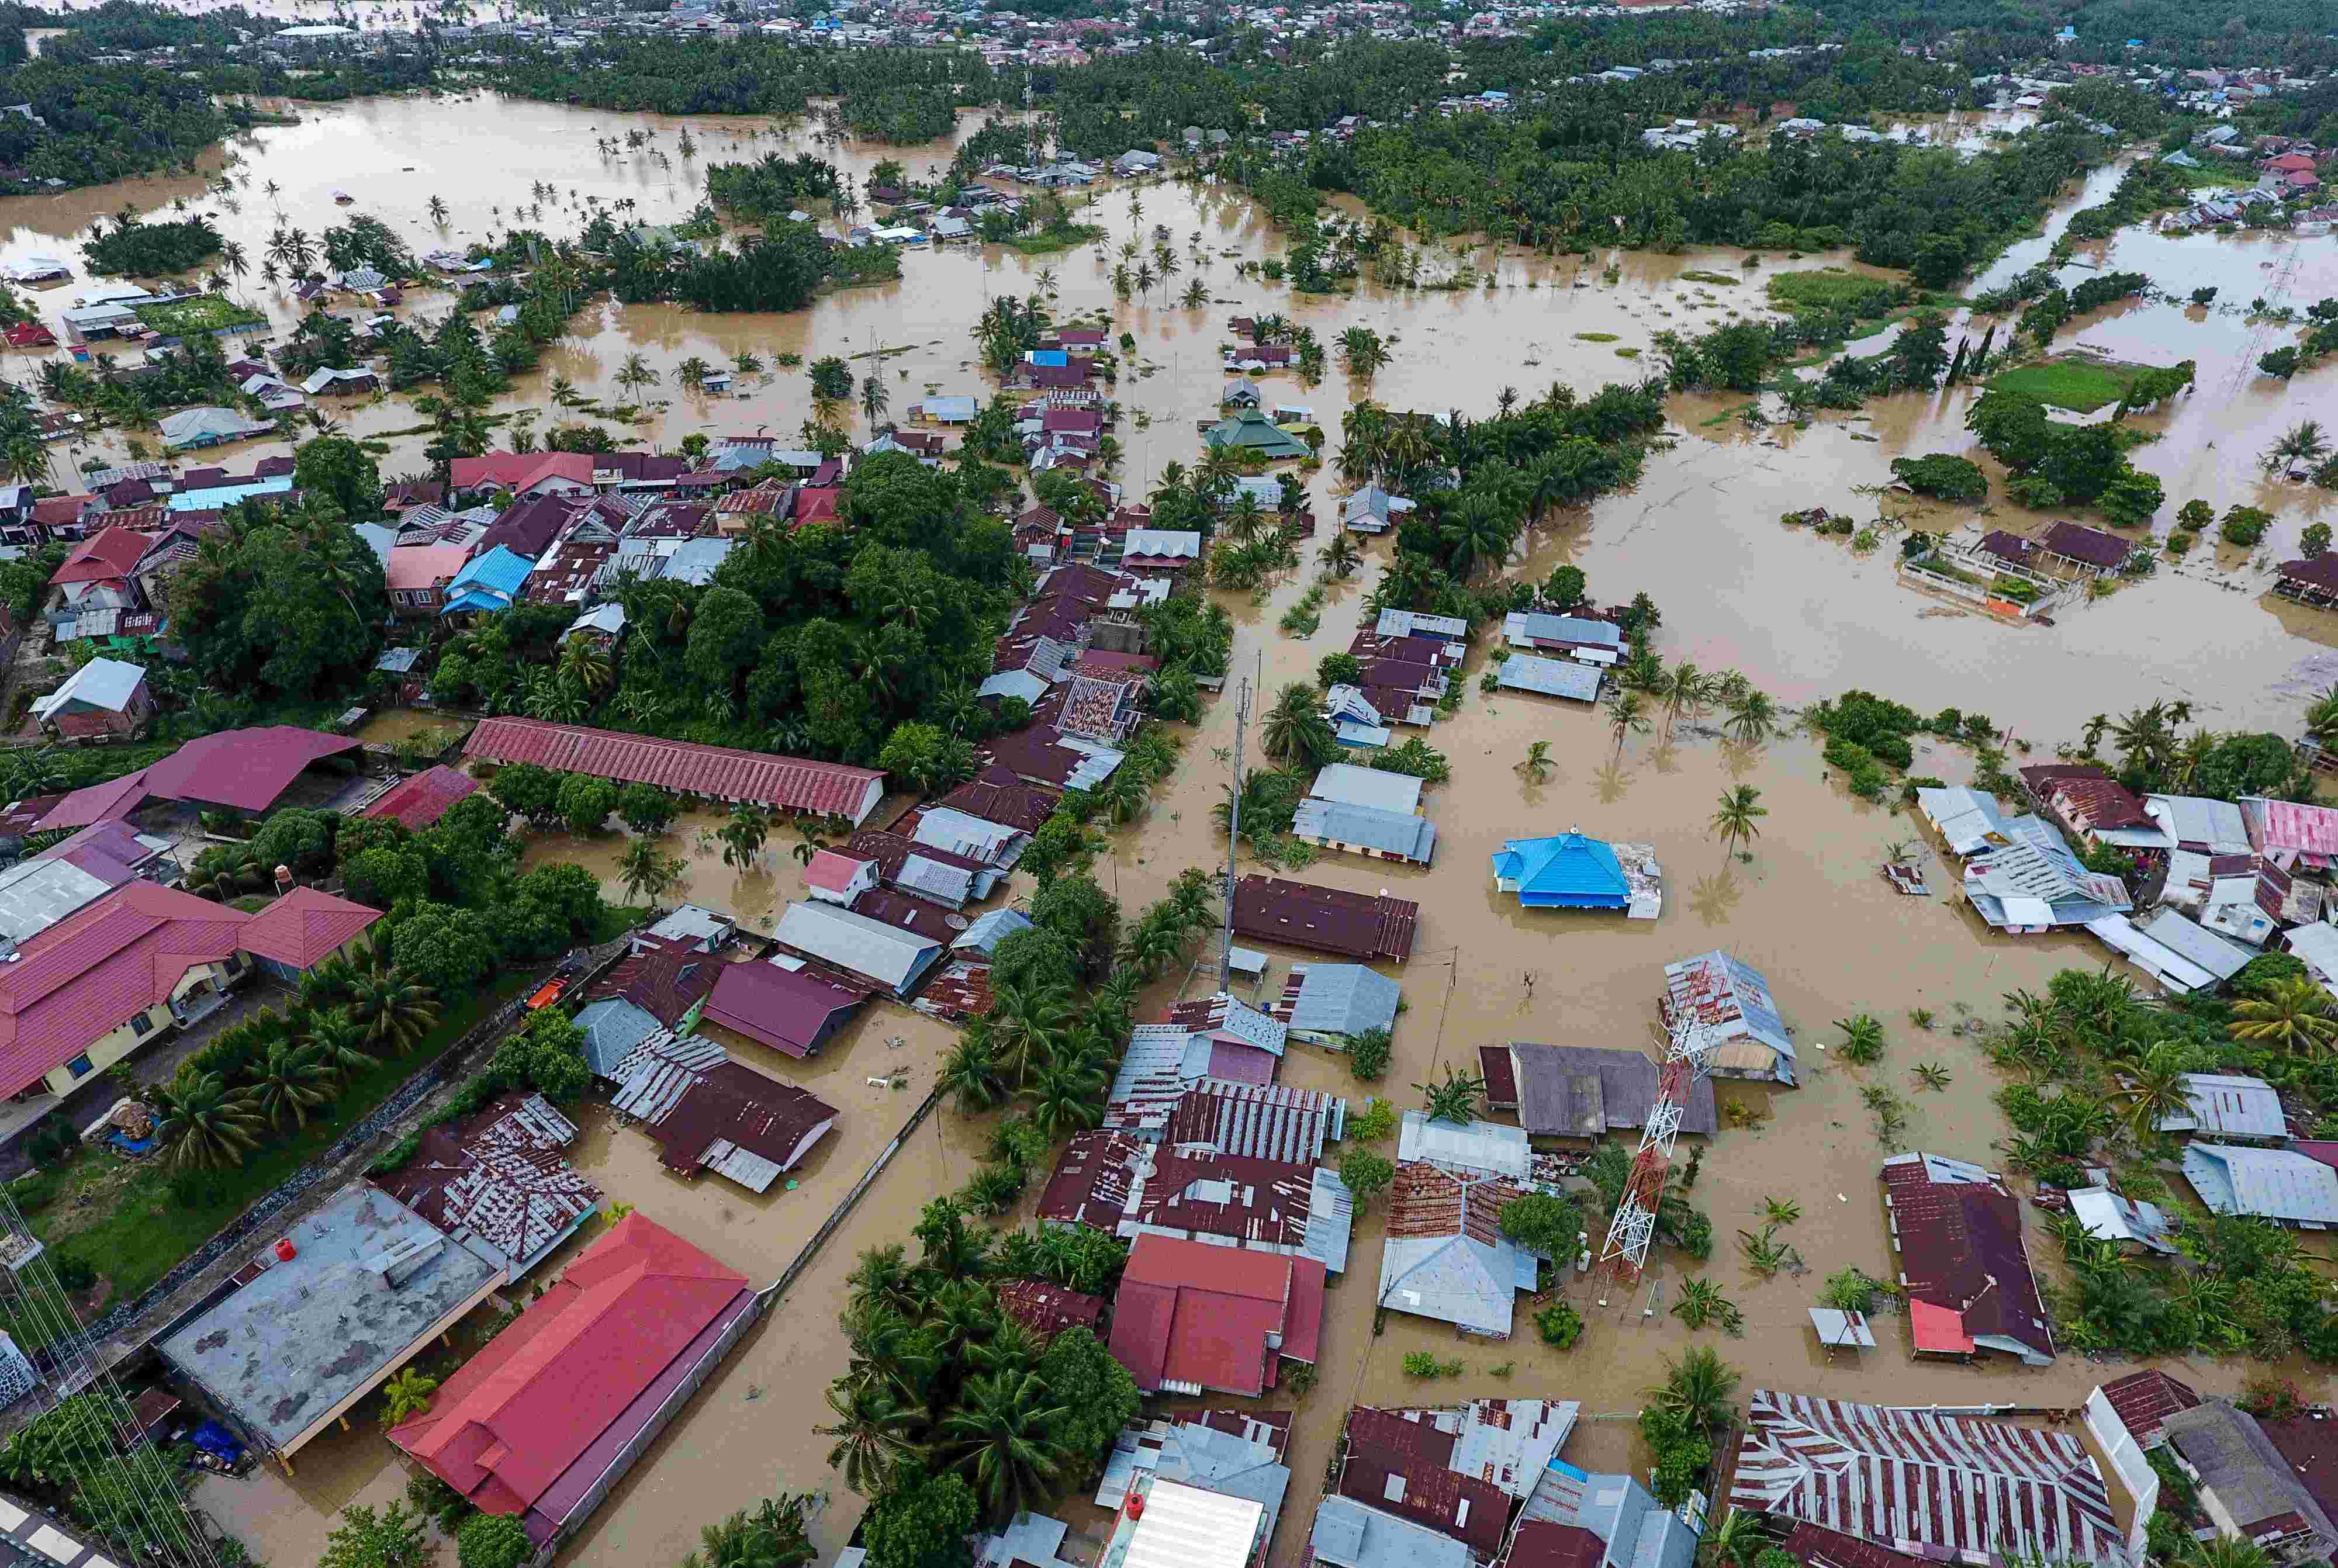 印尼连日暴雨引发洪水及泥石流 致17人死9人失踪